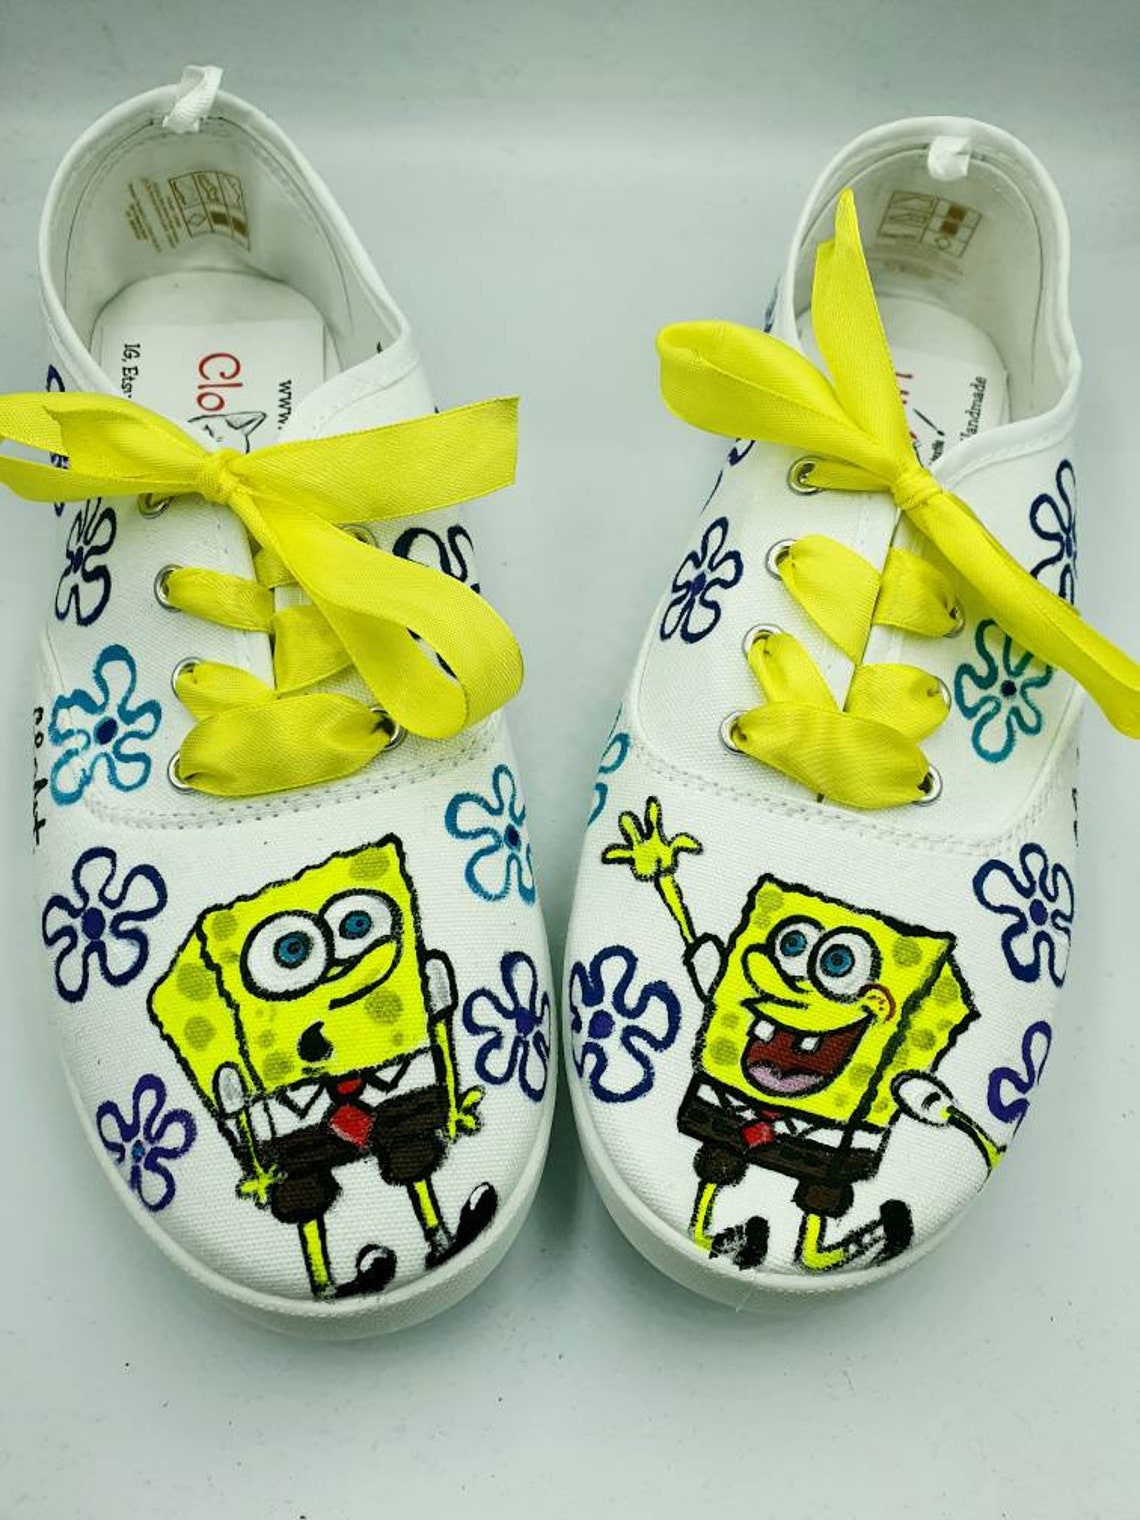 Spongebob hand painted tie sneakers painted Spongebob shoes | Etsy